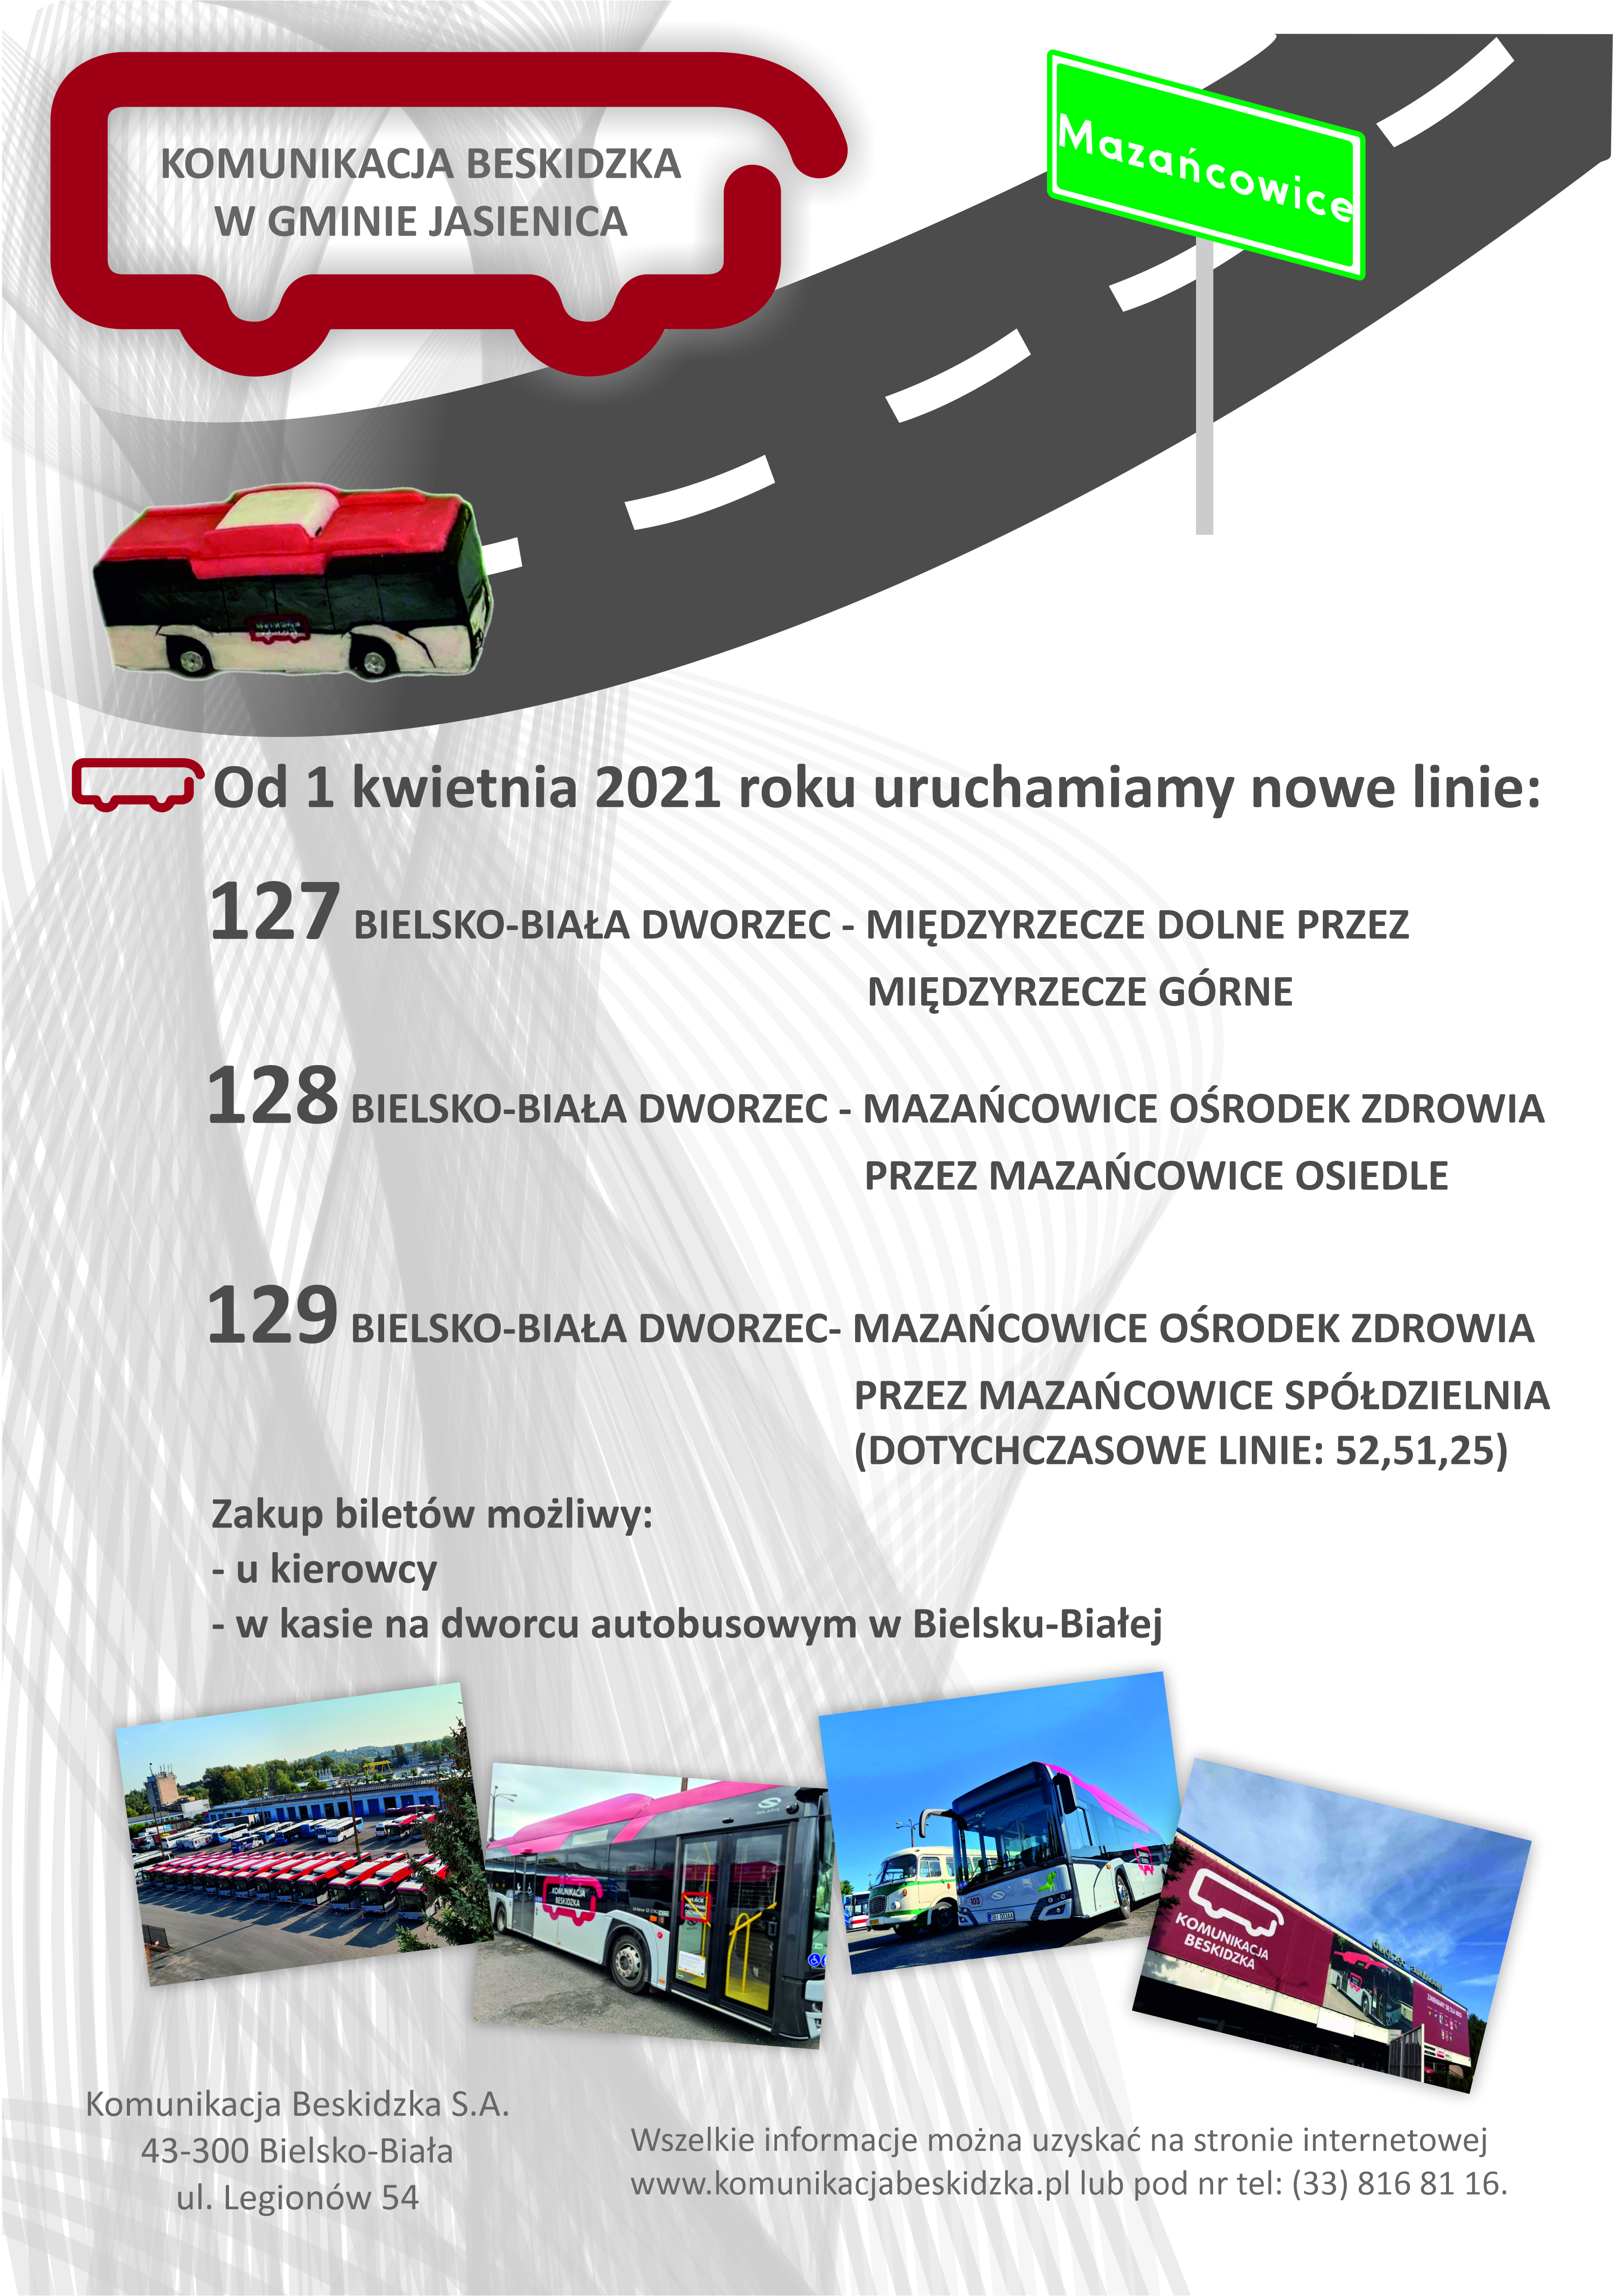 Plakat Komunikacji Beskidzkiej o liniach autobusowych.